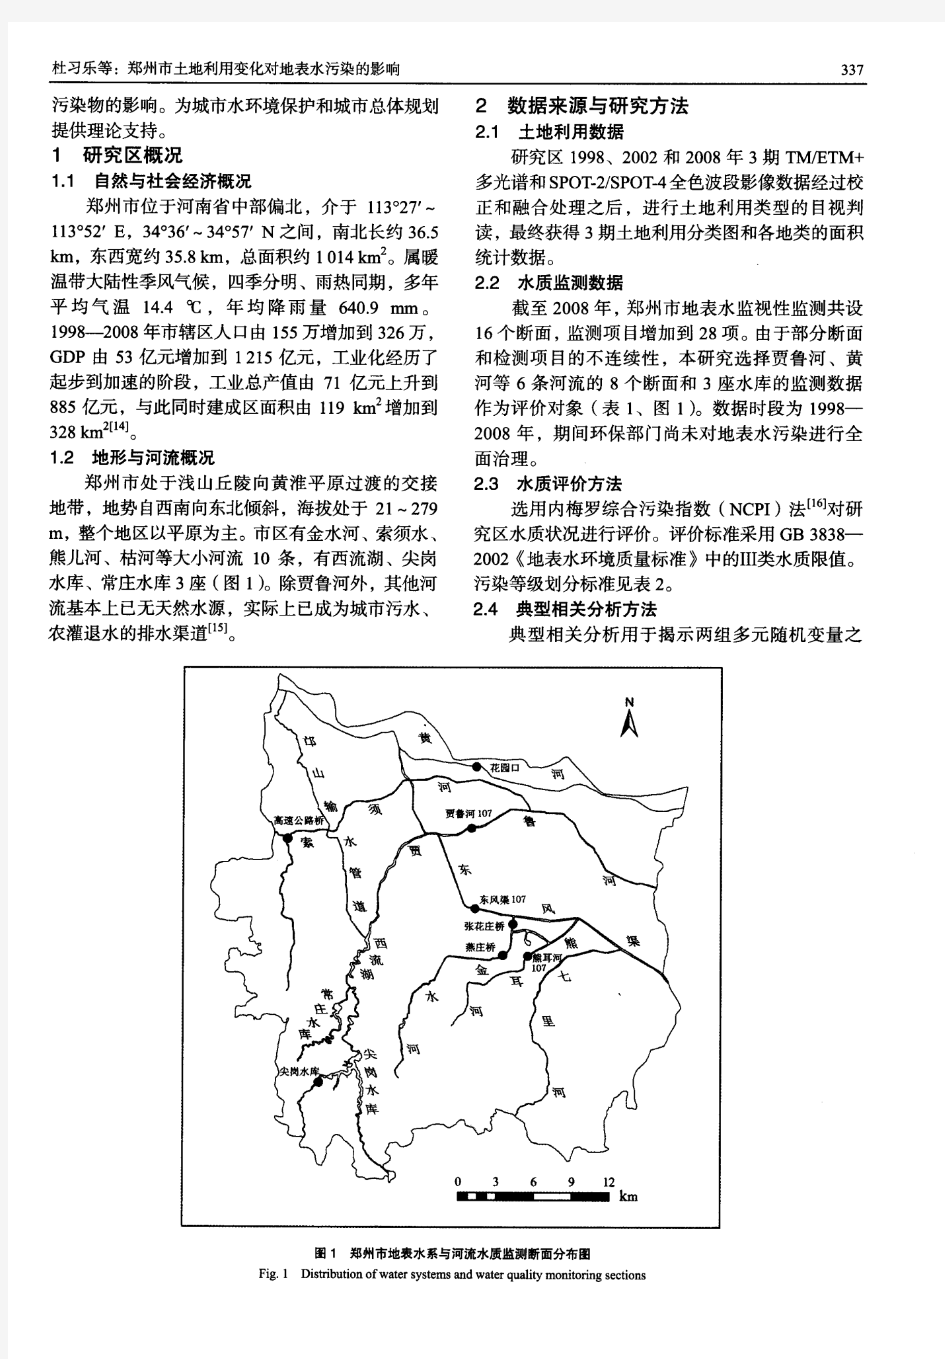 郑州市土地利用变化对地表水污染的影响